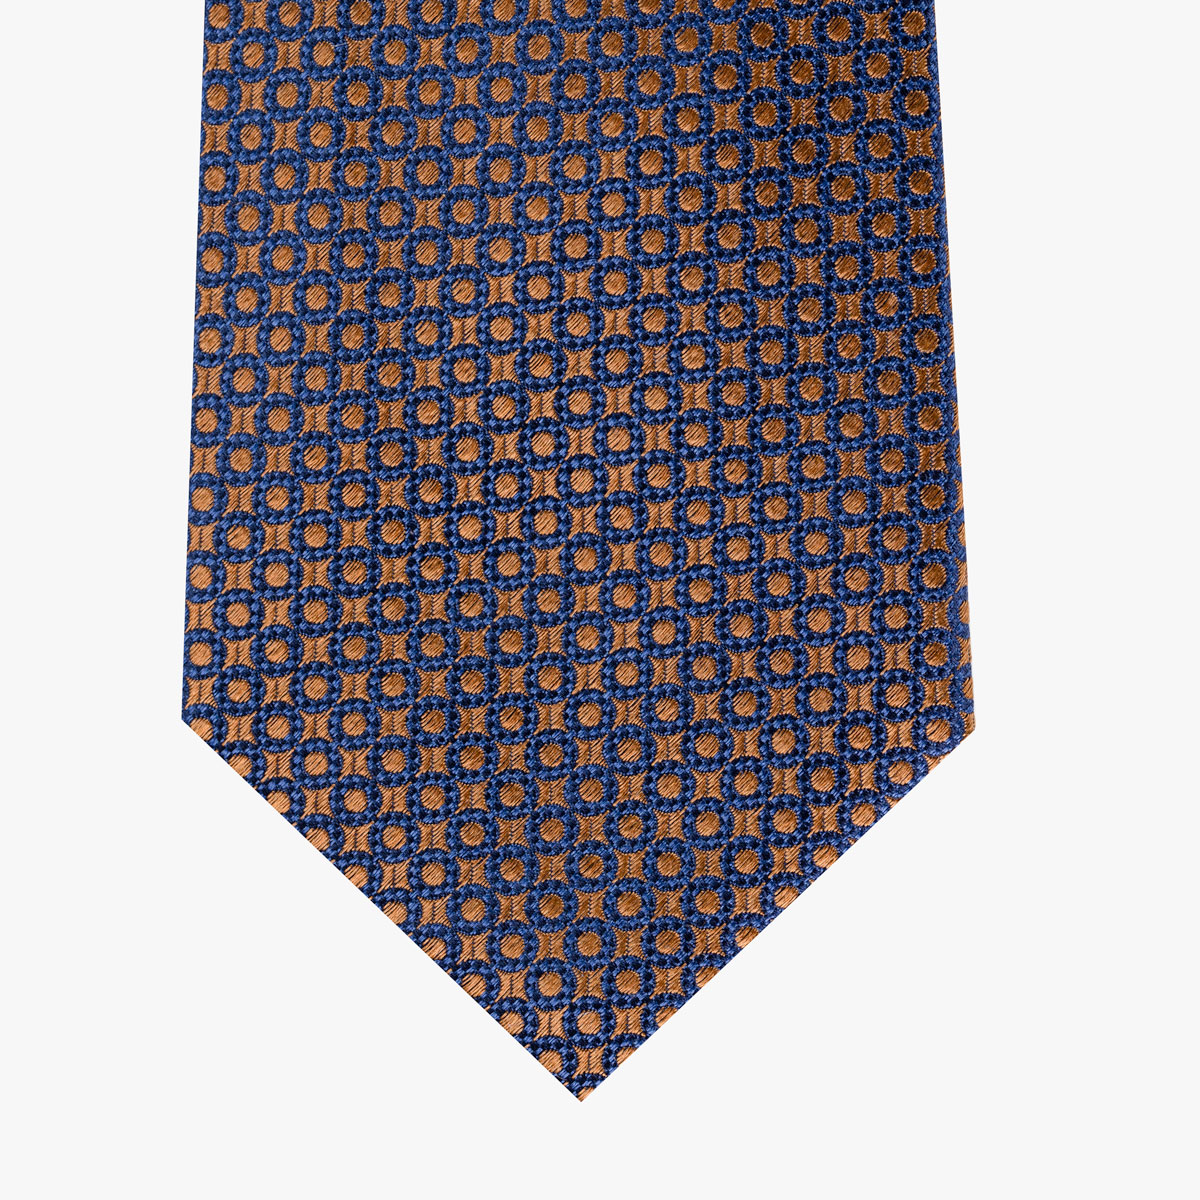 Krawatte mit geometrischem Muster in orange